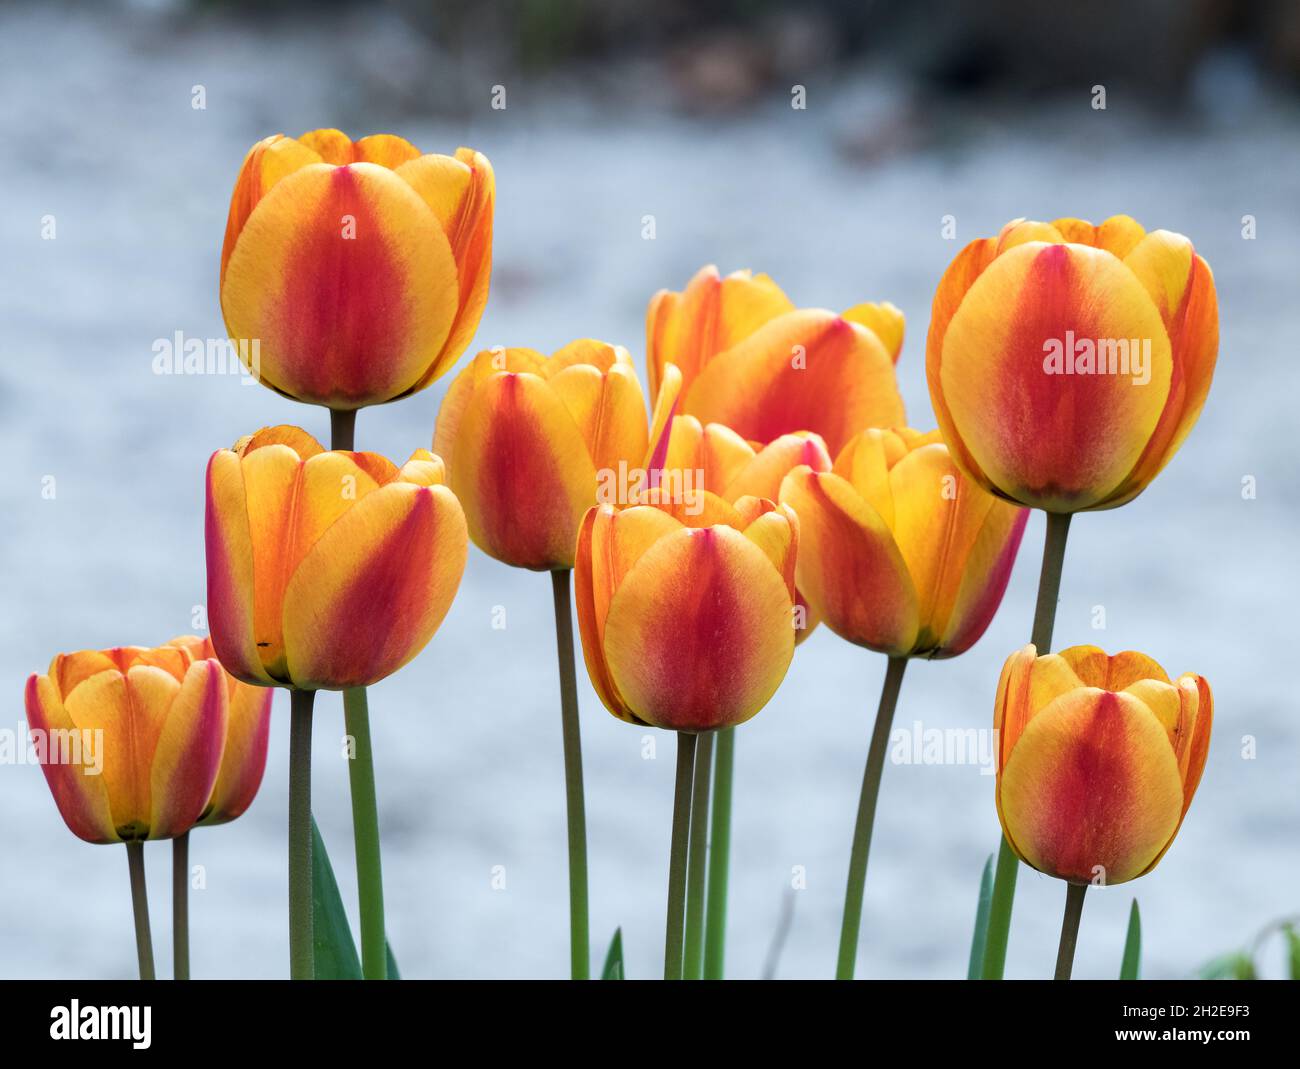 Viele orange rote Tulpenblüten in hellem Hintergrund Stockfoto